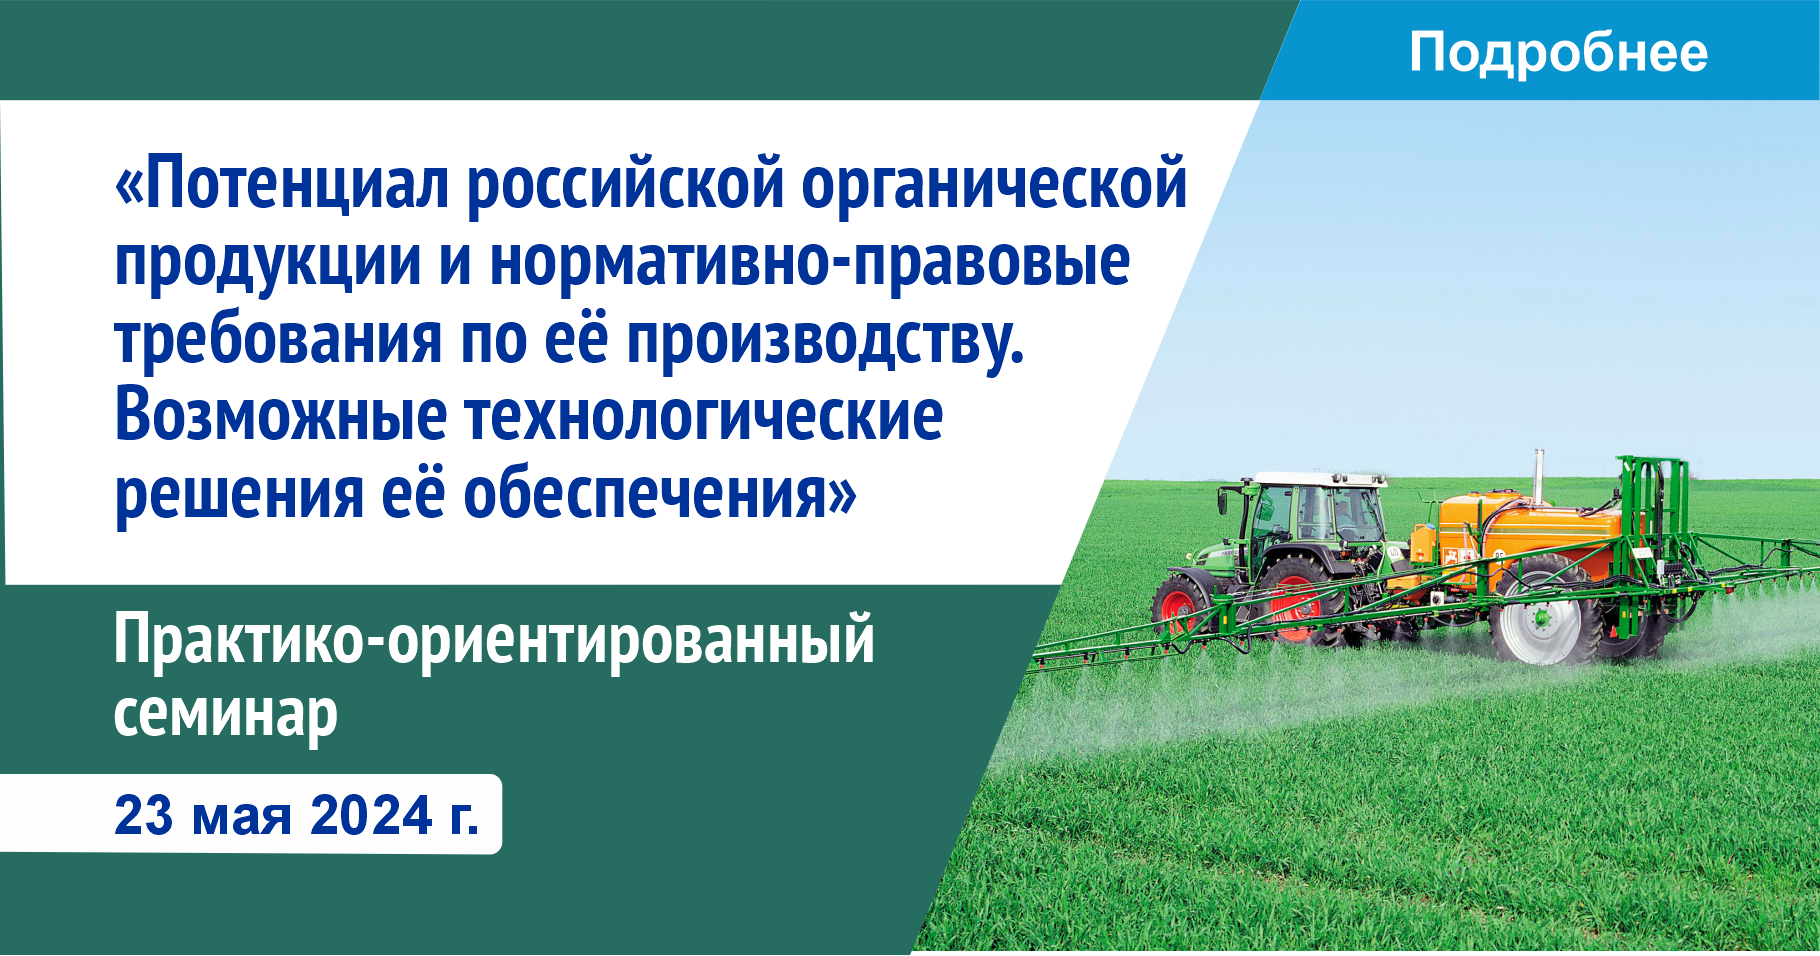 Потенциал российской органической продукции и нормативно-правовые требования по ее производству. Возможные технологические решения ее обеспечения